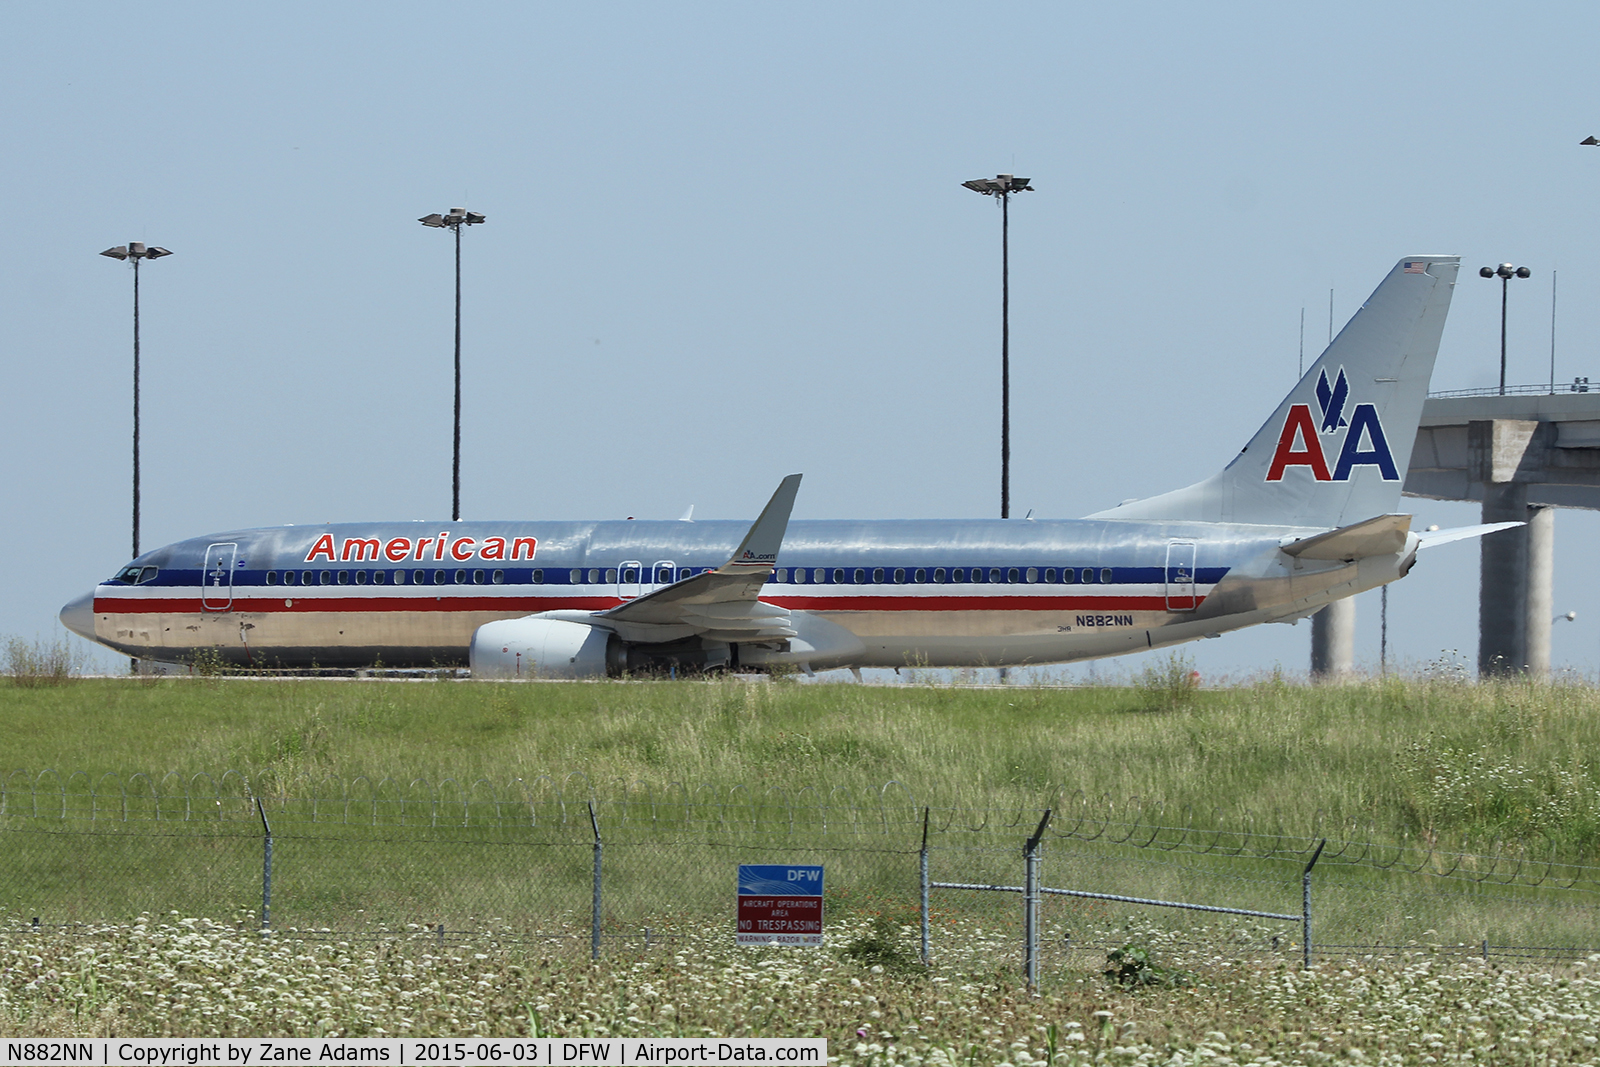 N882NN, 2011 Boeing 737-823 C/N 33221, American Airlines at DFW Airport